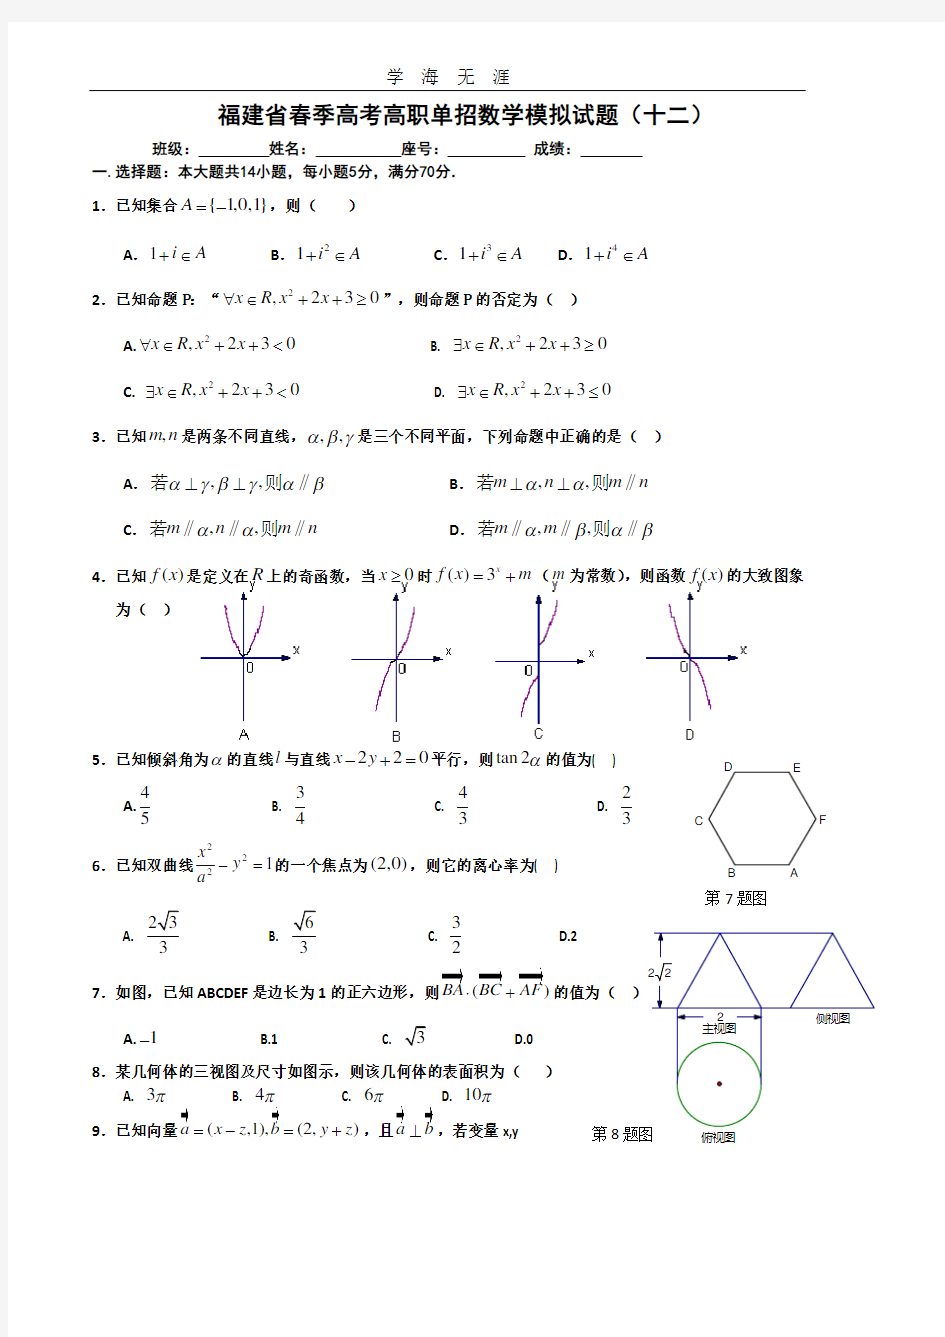 福建省春季高考高职单招数学模拟试题(十二)及答案.pdf